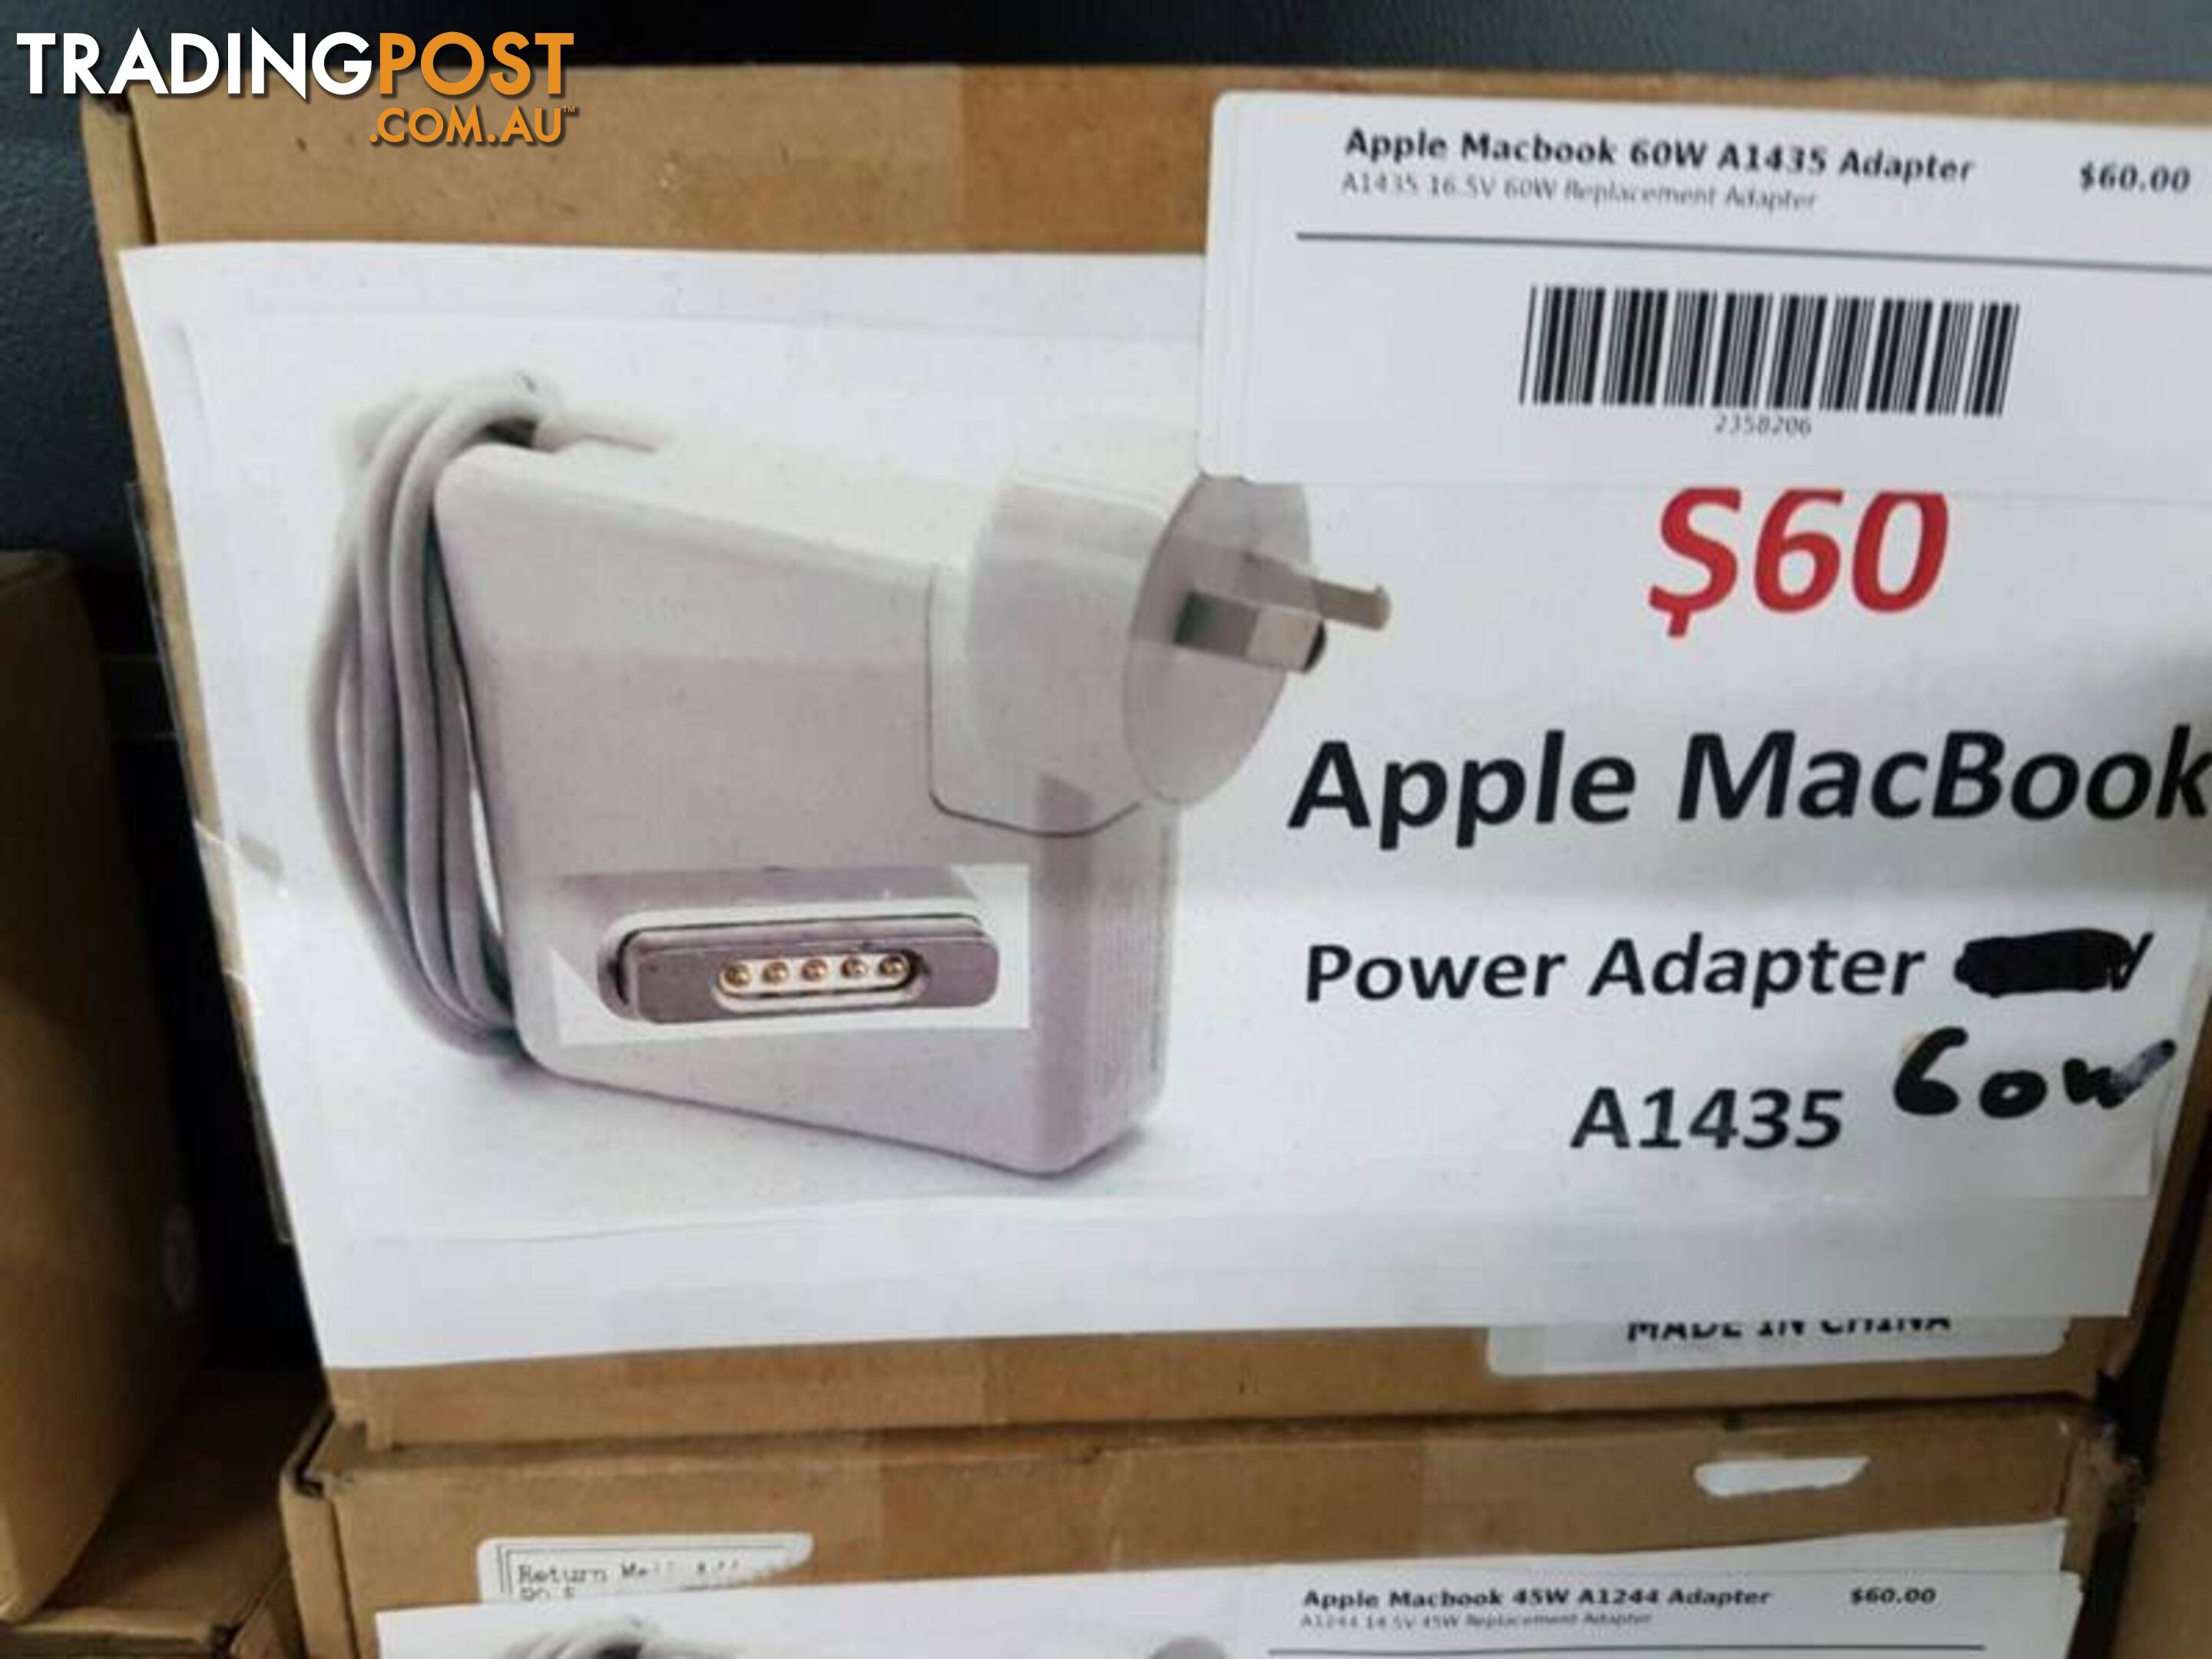 Apple Macbook Power Adapter A1435